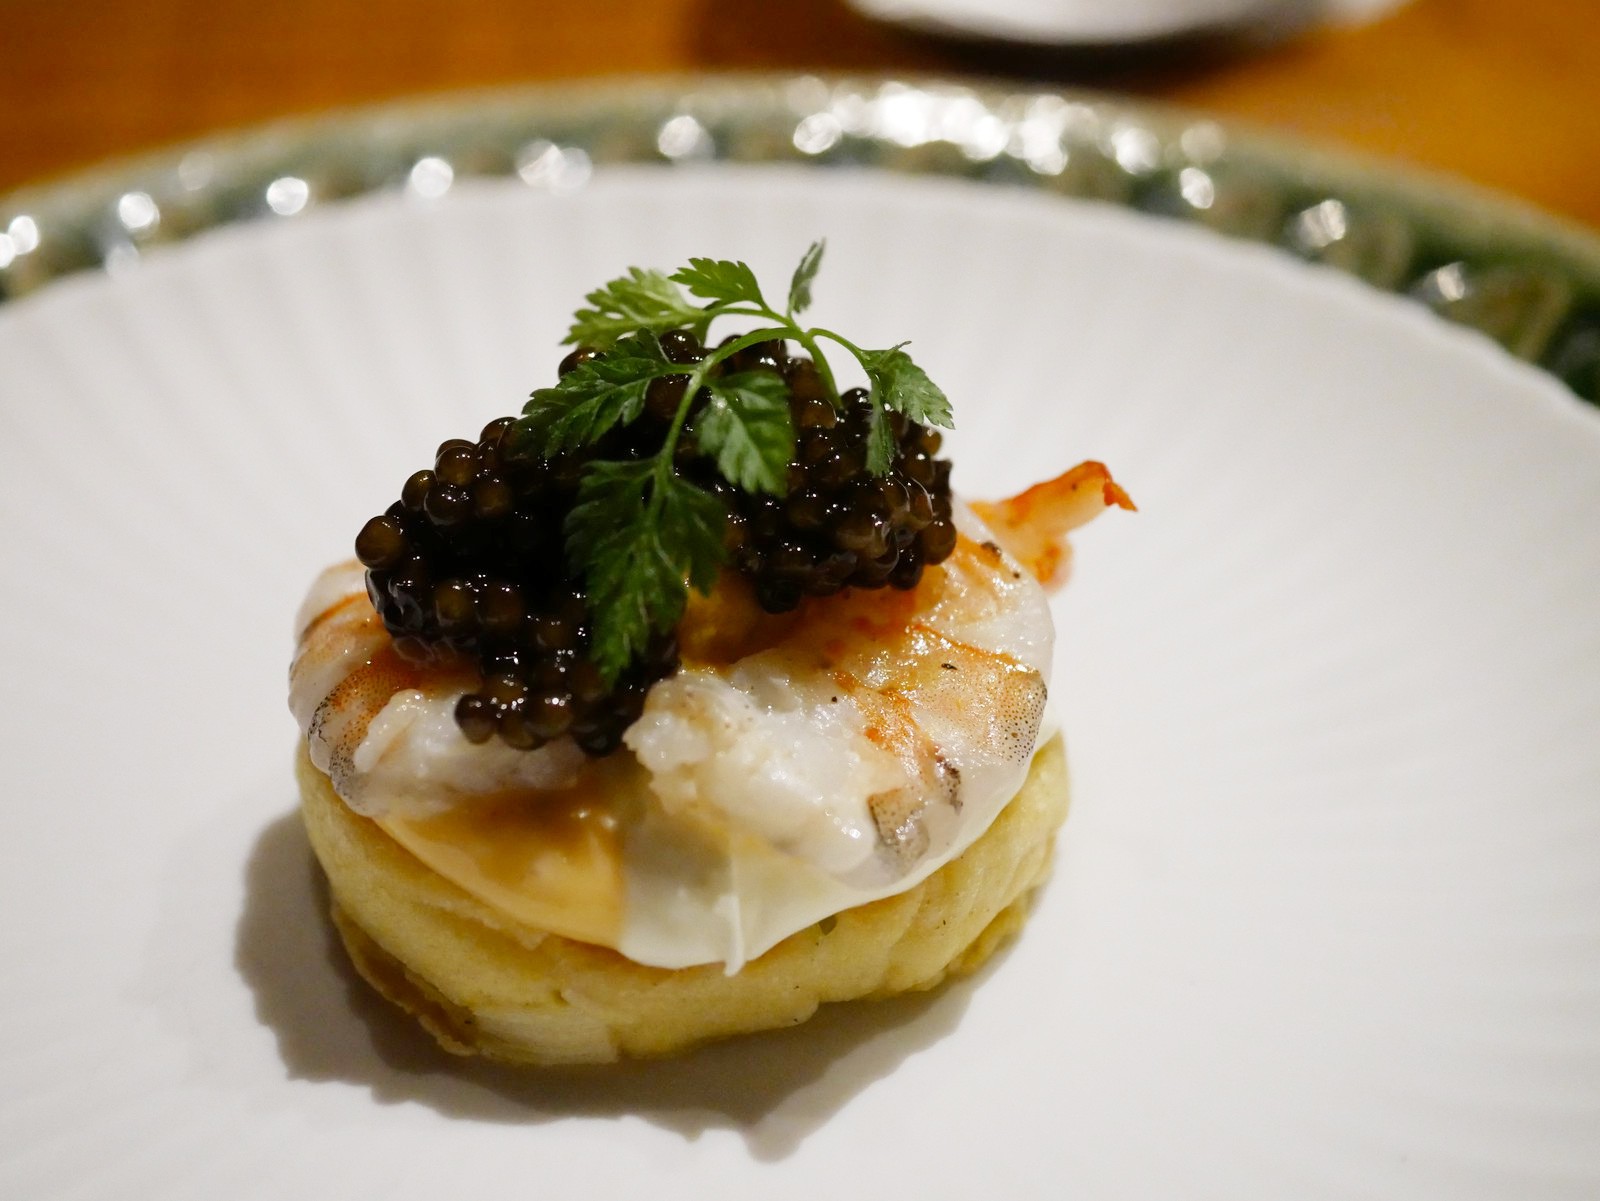 久岡寛平料理長のスペシャリテでもある「八坂パンケーキ」は、ウニとエビにキャビアをあしらった贅沢な前菜